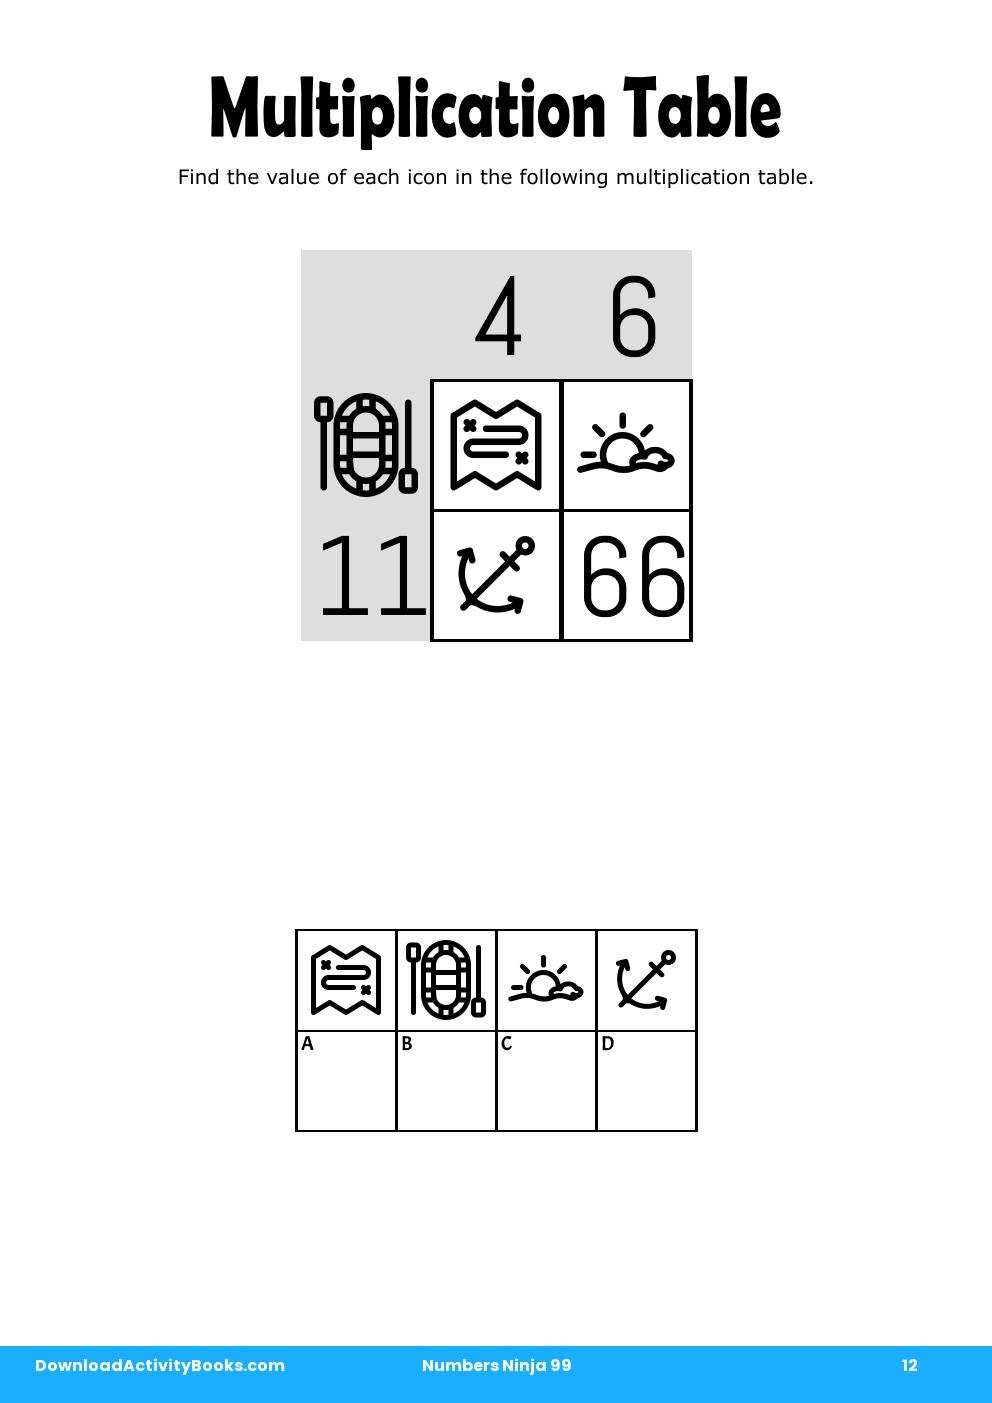 Multiplication Table in Numbers Ninja 99